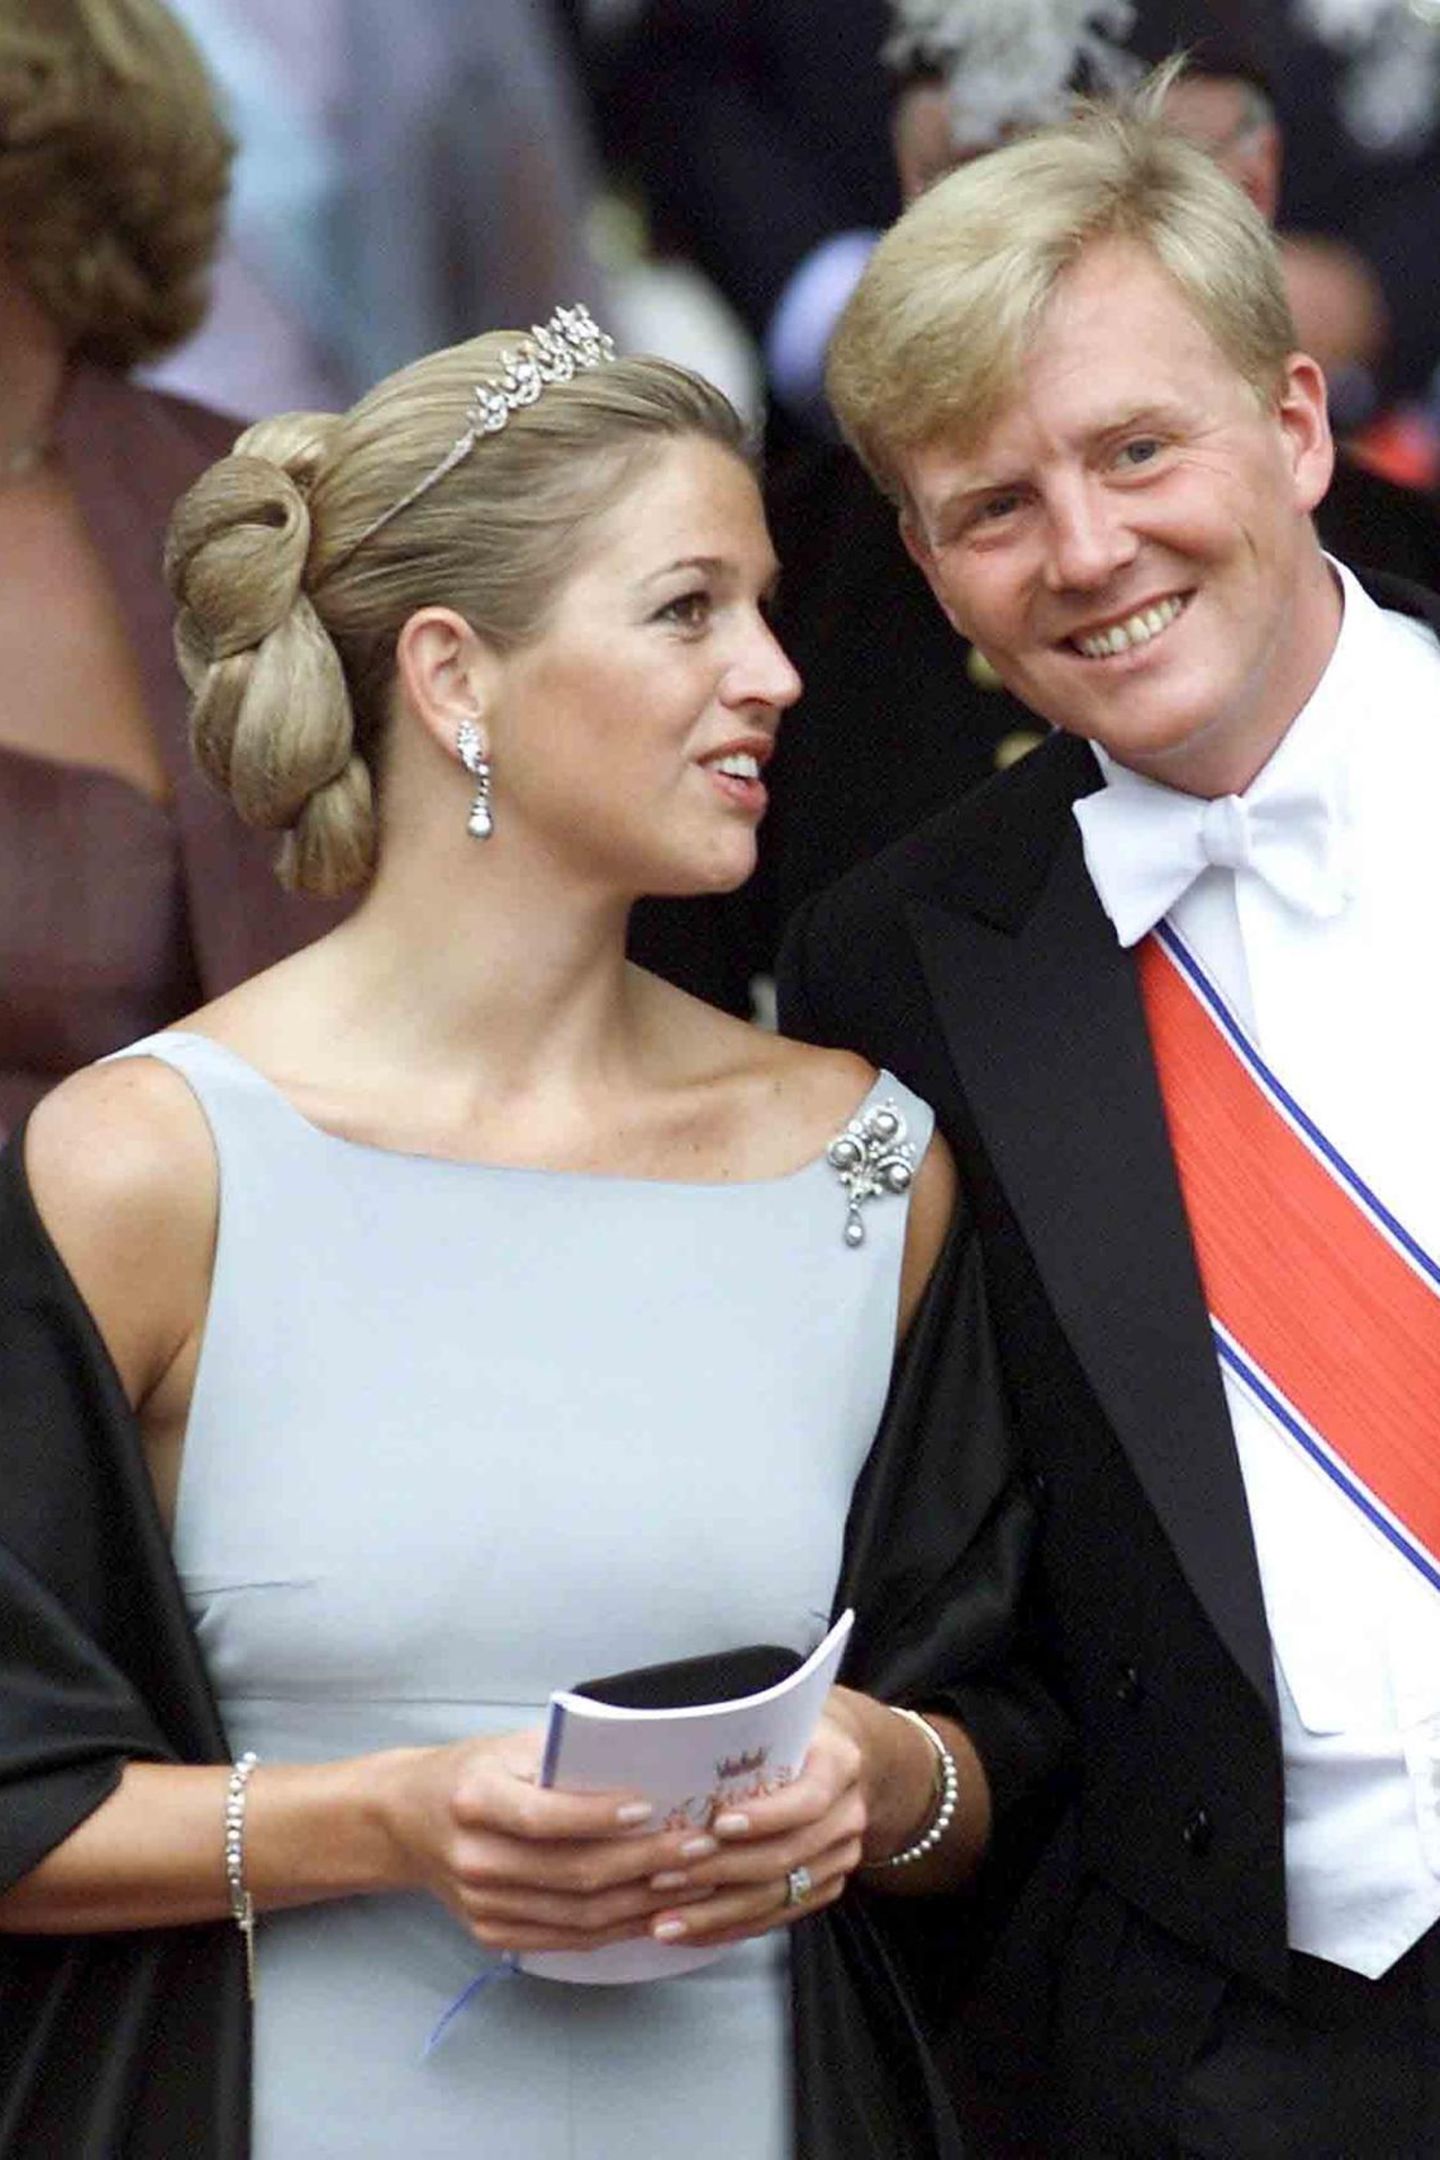 Máxima Zorreguieta, die Verlobte von Prinz Willem-Alexander, darf schon vor ihrer Hochzeit ins königliche Schmuckkästchen greifen und gibt ihr Diadem-Debüt im August 2001 auf der Hochzeit von Prinz Haakon in Norwegen. Ihre eigene Hochzeit ist erst etliche Monate später, am 2. Februar 2002.  Die Wahl, die sie getroffen hat für den Anlass, ist dezent und doch hochkarätig: Die Tiara mit den Perlen und Diamanten ist dezent genug, um nicht zu sehr aufzufallen im Haar der Noch-Nicht-Prinzessin.